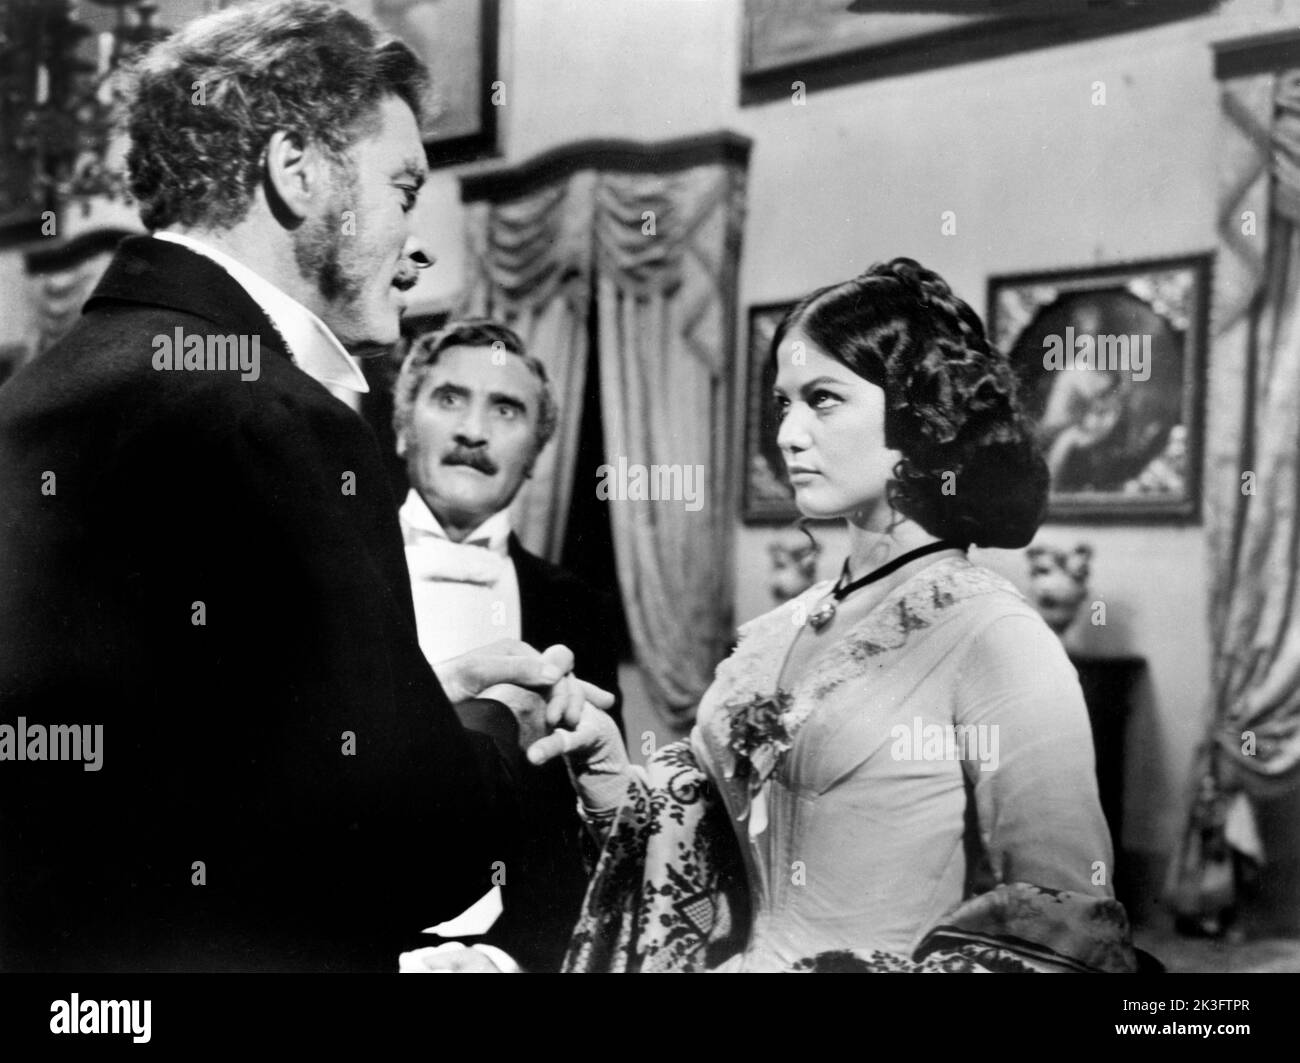 Burt Lancaster, (à gauche) Claudia Cardinale, sur le tournage du film, 'le léopard', Italien : il Gattopardo, 20th Century-Fox, 1963 Banque D'Images